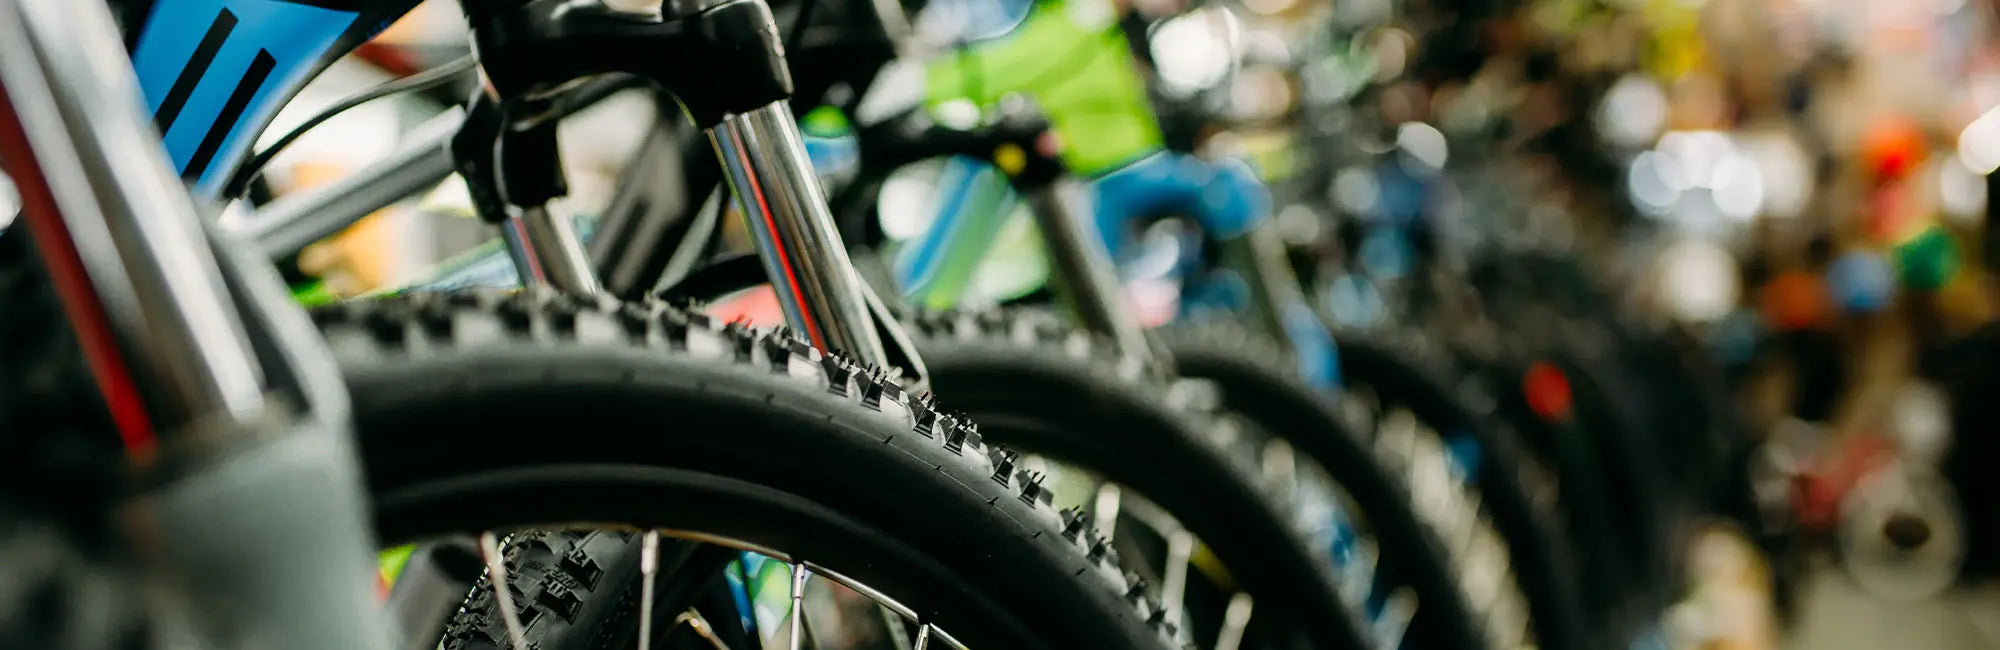 DottorBike a Pisa offre servizio di permuta bici e vendita bici usate ricondizionate e garantite